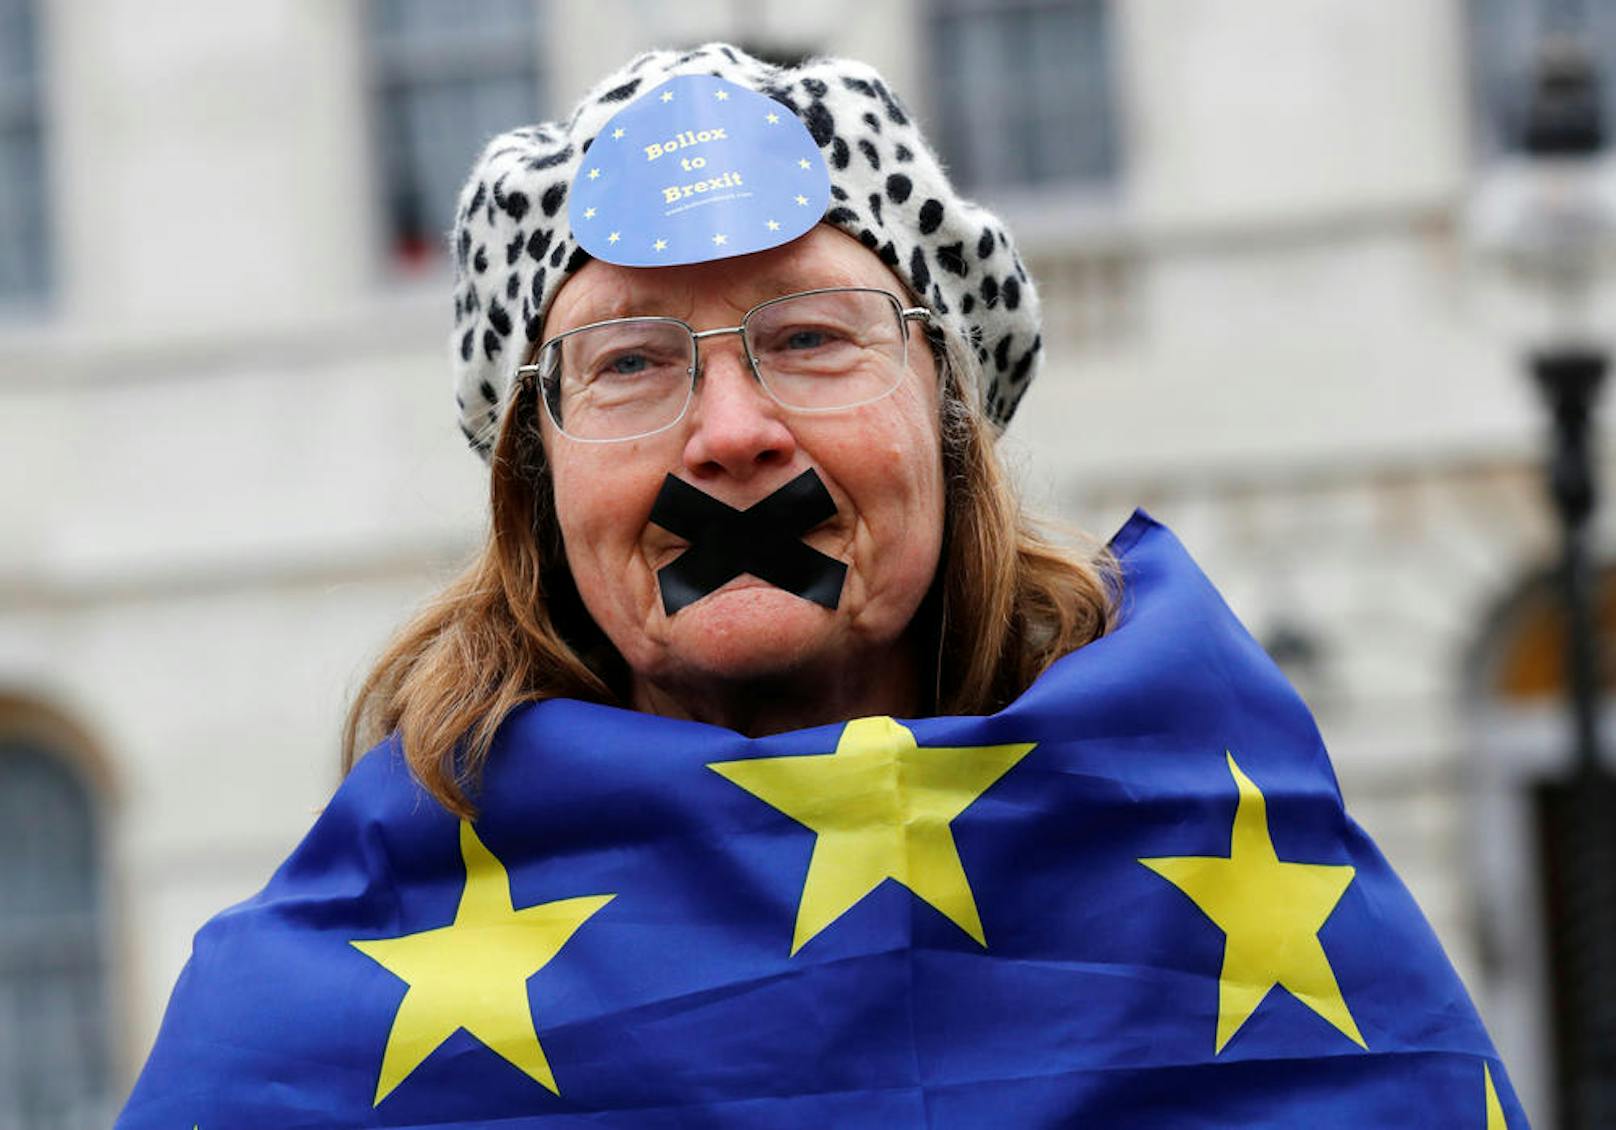 29.03.2017: Auch wenn die britische Premierministerin Theresa May den EU-Austrittsprozess Großbritanniens in die Wege geleitet hat, protestieren Bürger wie diese Frau vor dem Westminster Palace gegen diese Entscheidung.